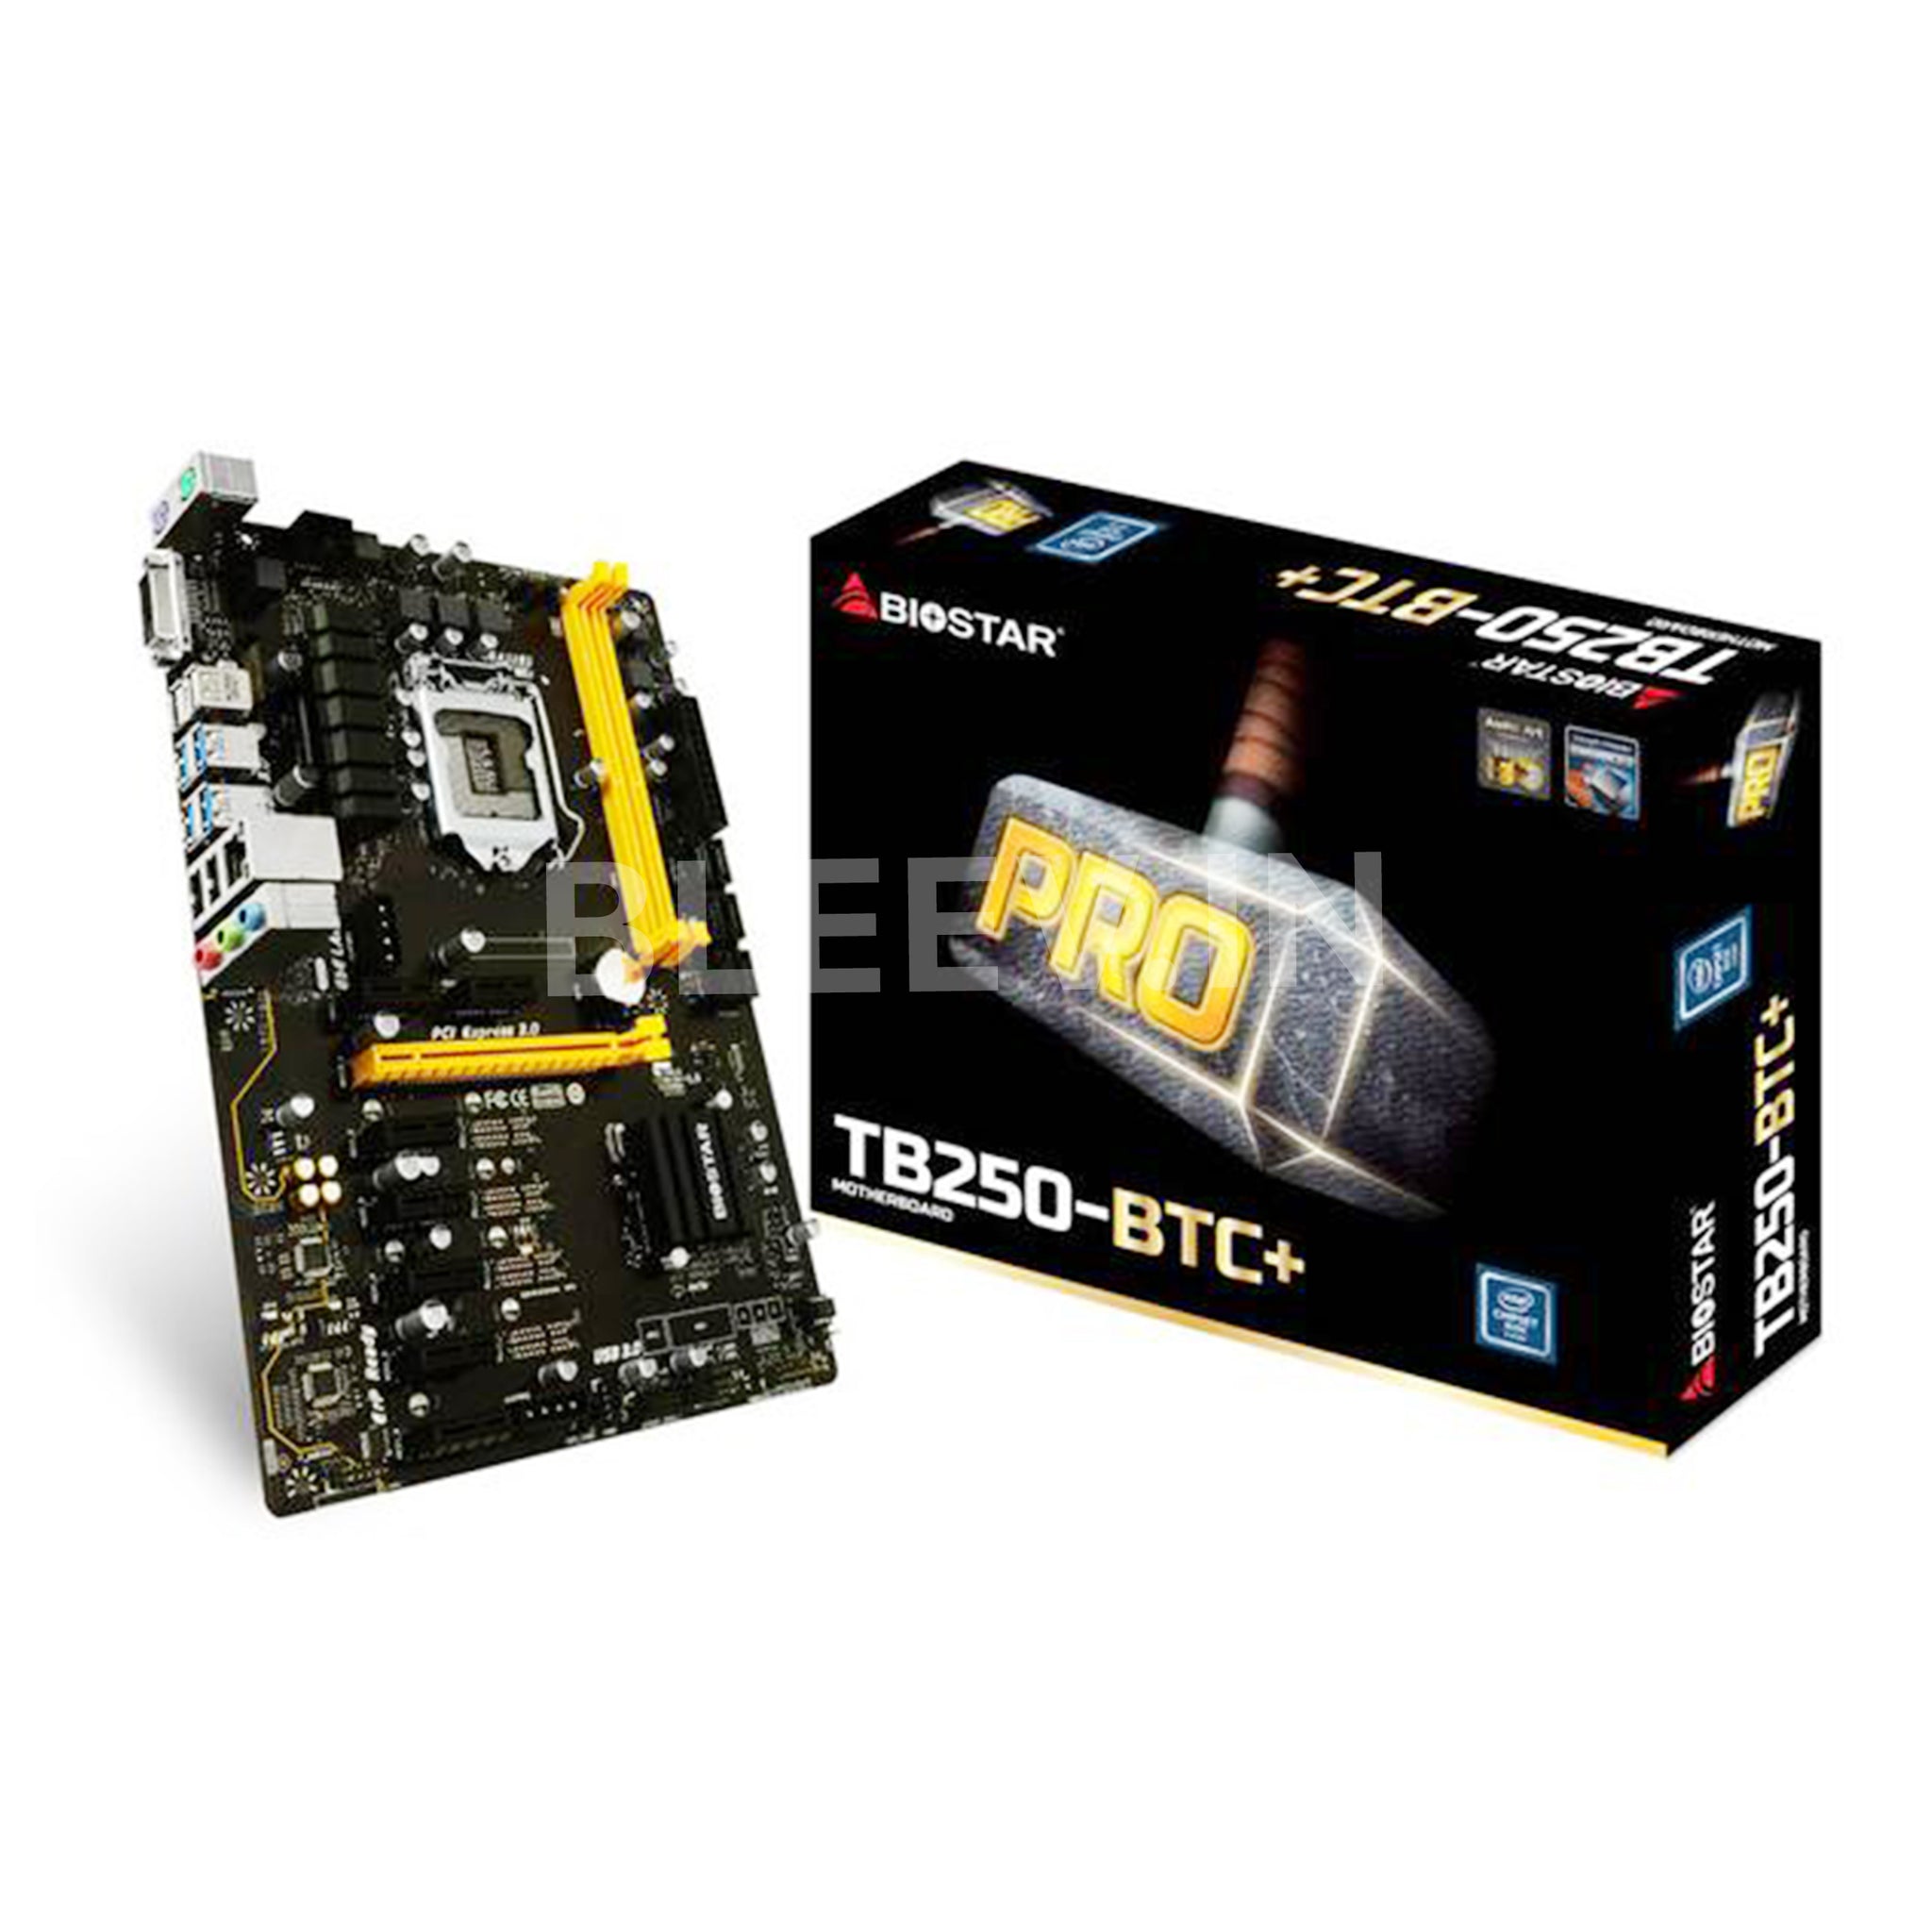 Biostar TB250-BTC+ 8 GPU Mining Motherboard LGA 1151 – Bleev.In